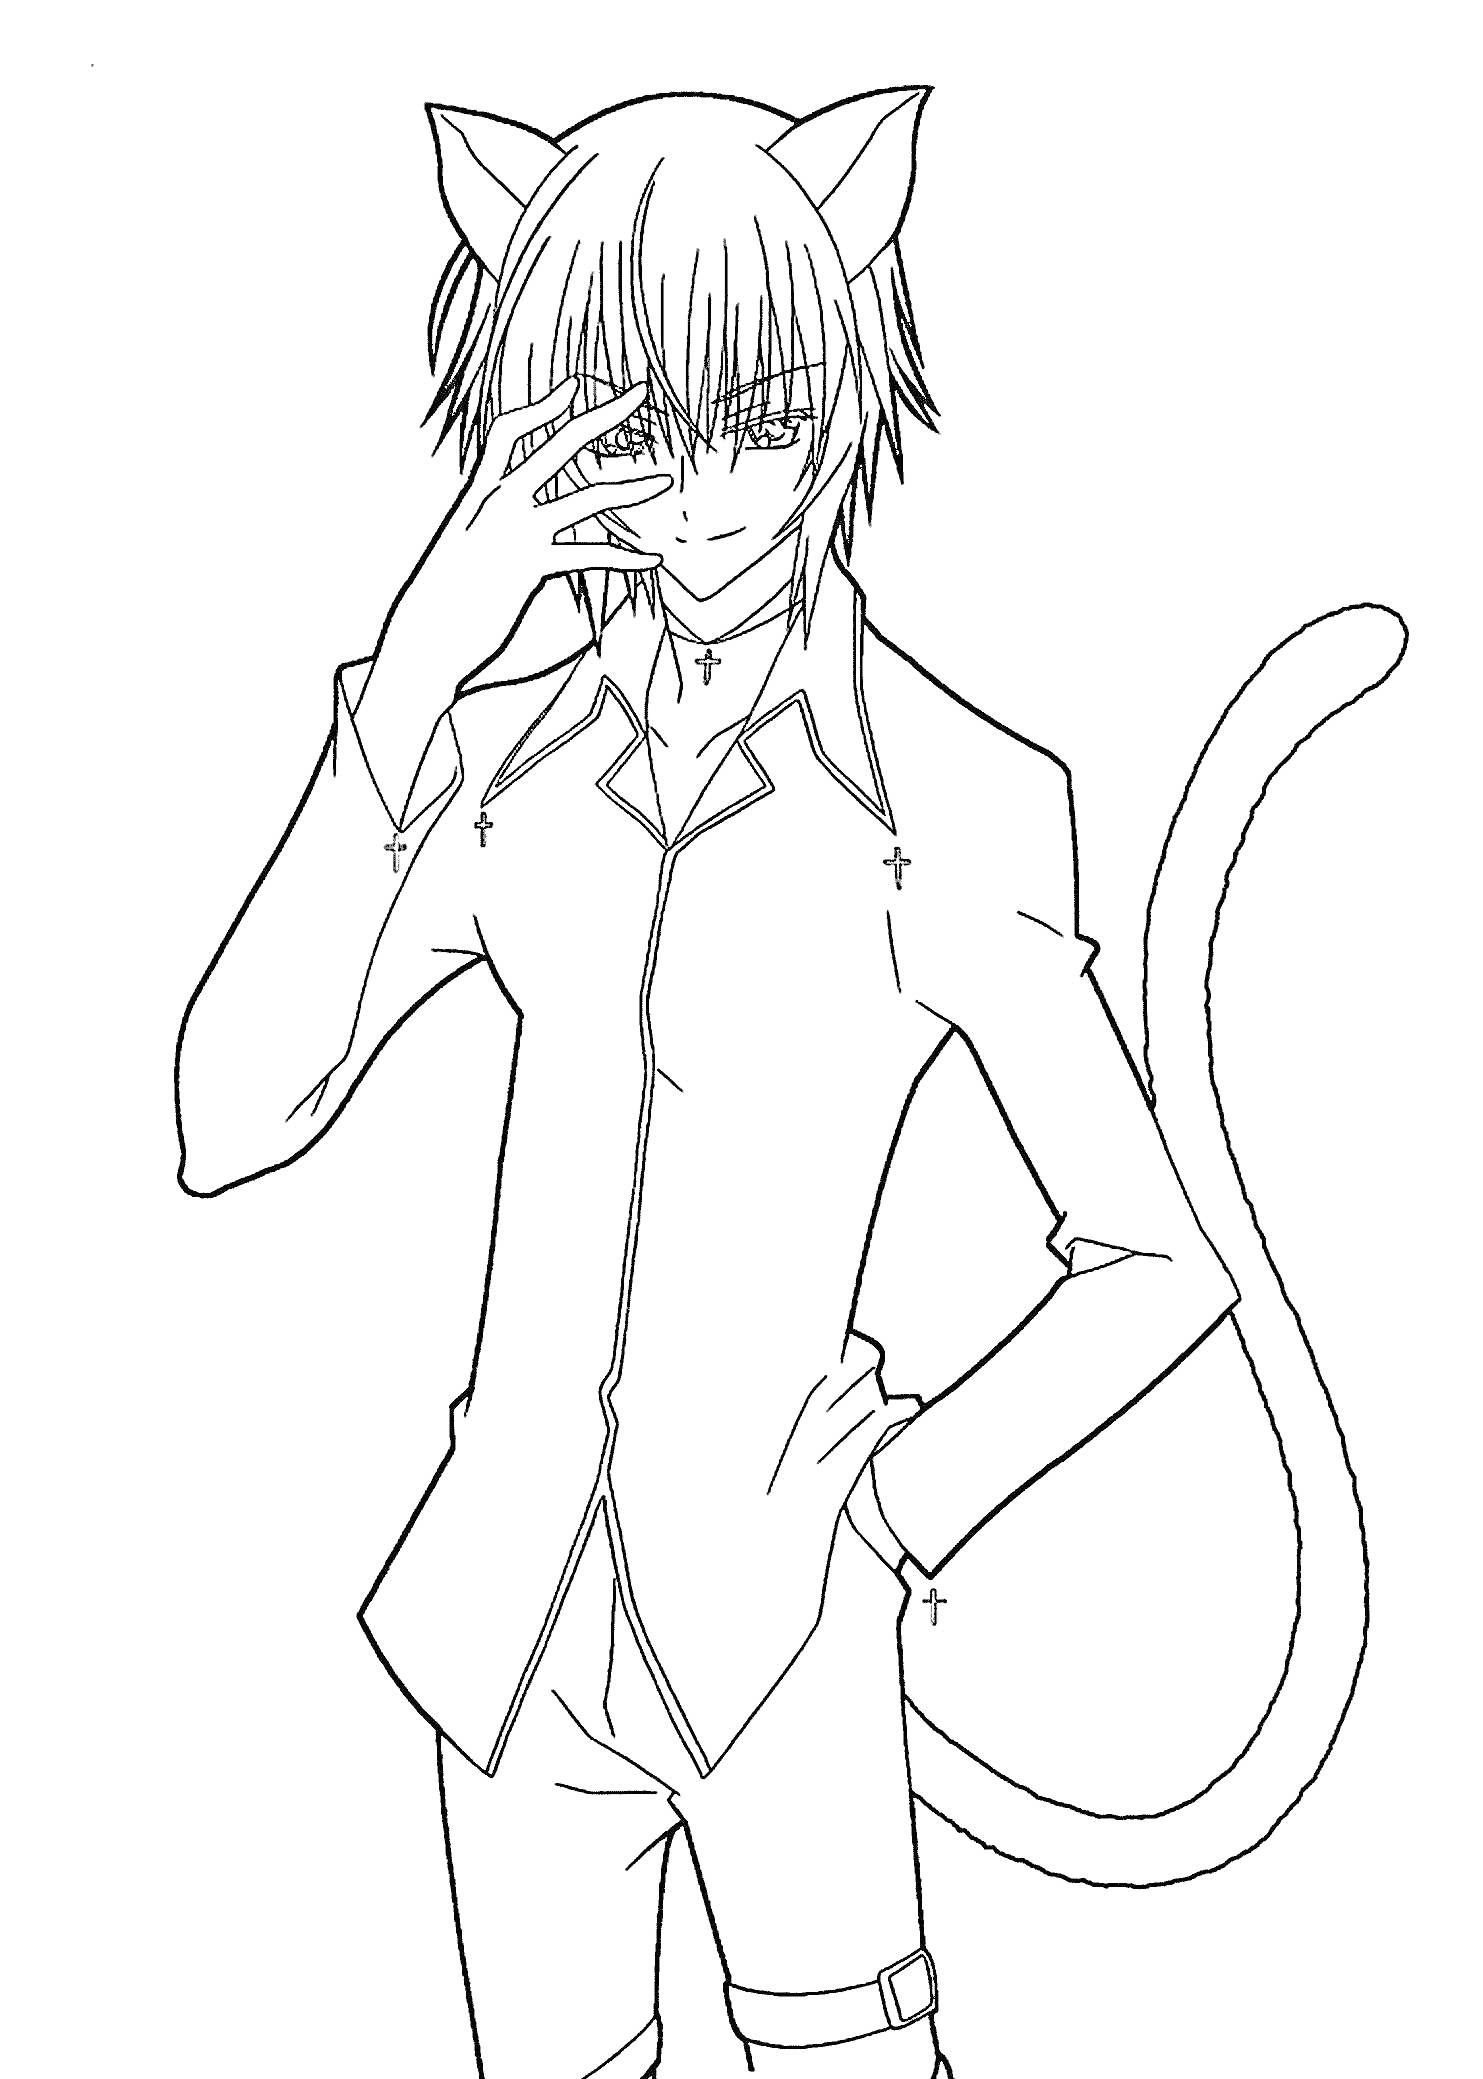 Аниме персонаж с кошачьими ушами и хвостом, в рубашке с длинным рукавом, поза с рукой на лице